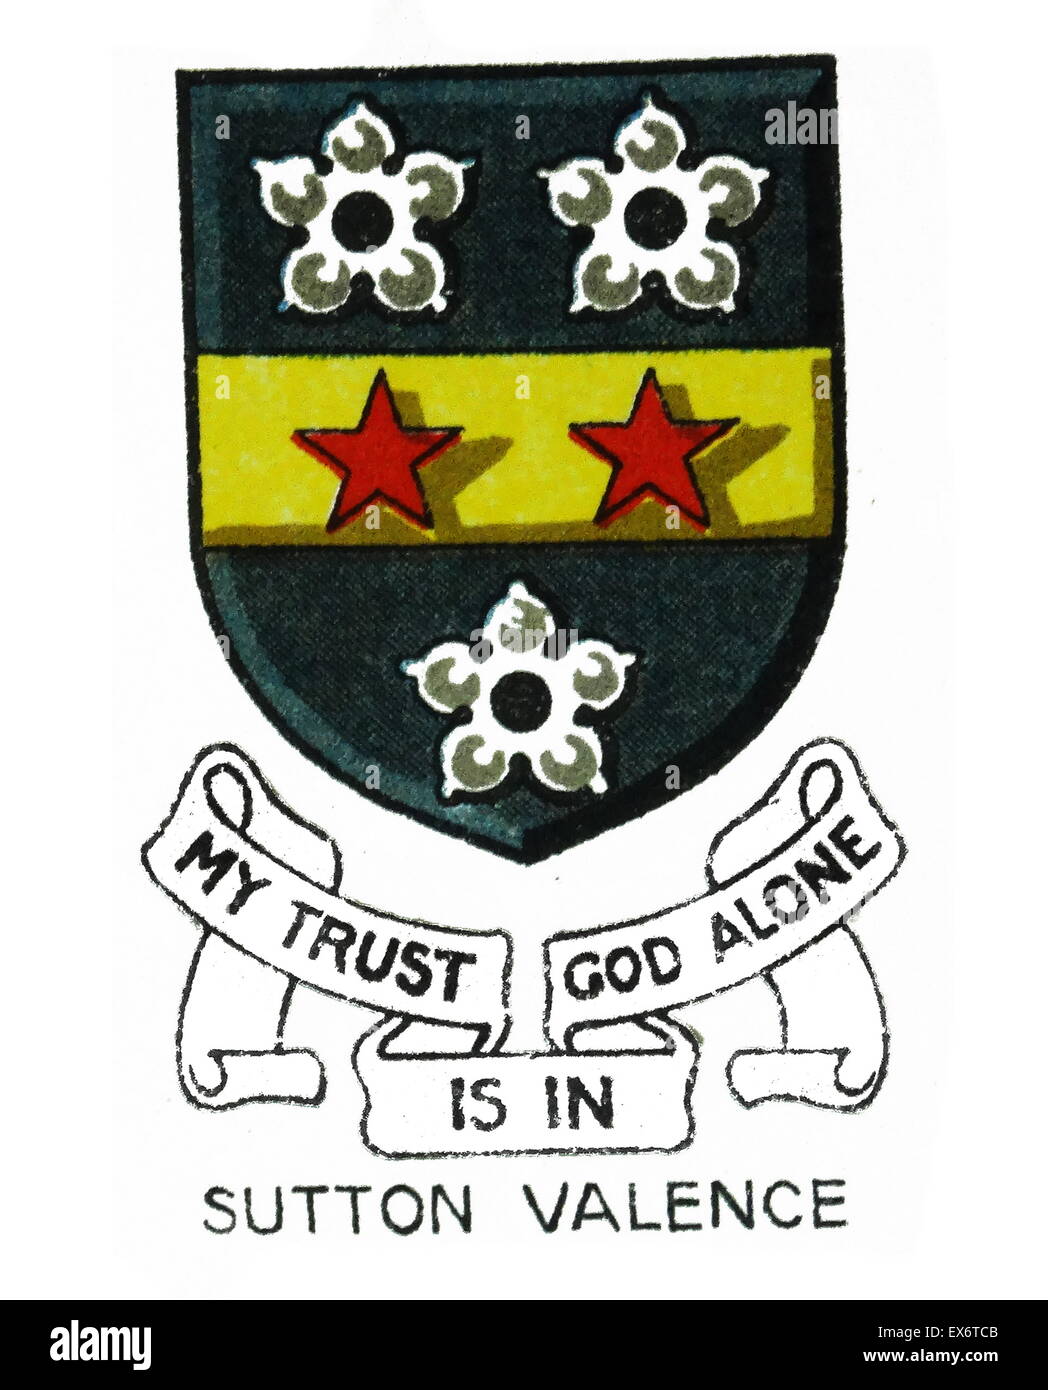 Emblema de Sutton Valence Escuela, Sutton Valence, Maidstone, Kent, una escuela independiente cerca de Maidstone, en el sudeste de Inglaterra. Es una co-educativa de la escuela con una opción de embarque. La escuela fue fundada en 1576. Foto de stock